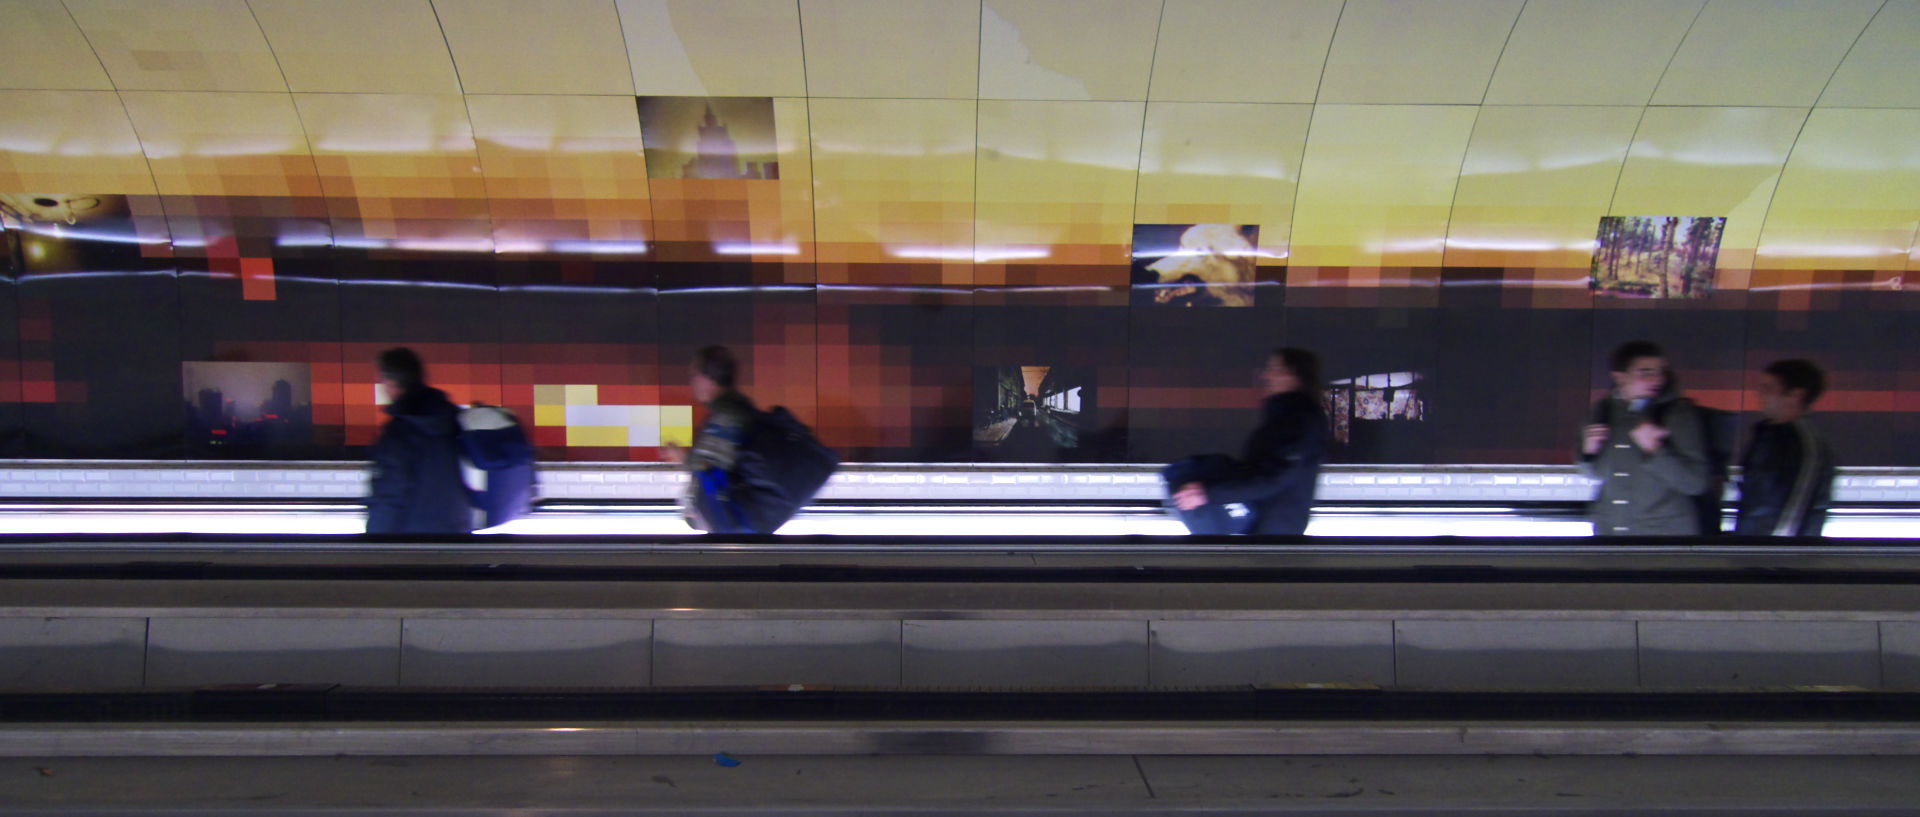 Mardi 2 décembre 2008 (3), station de métro Montparnasse, à Paris.